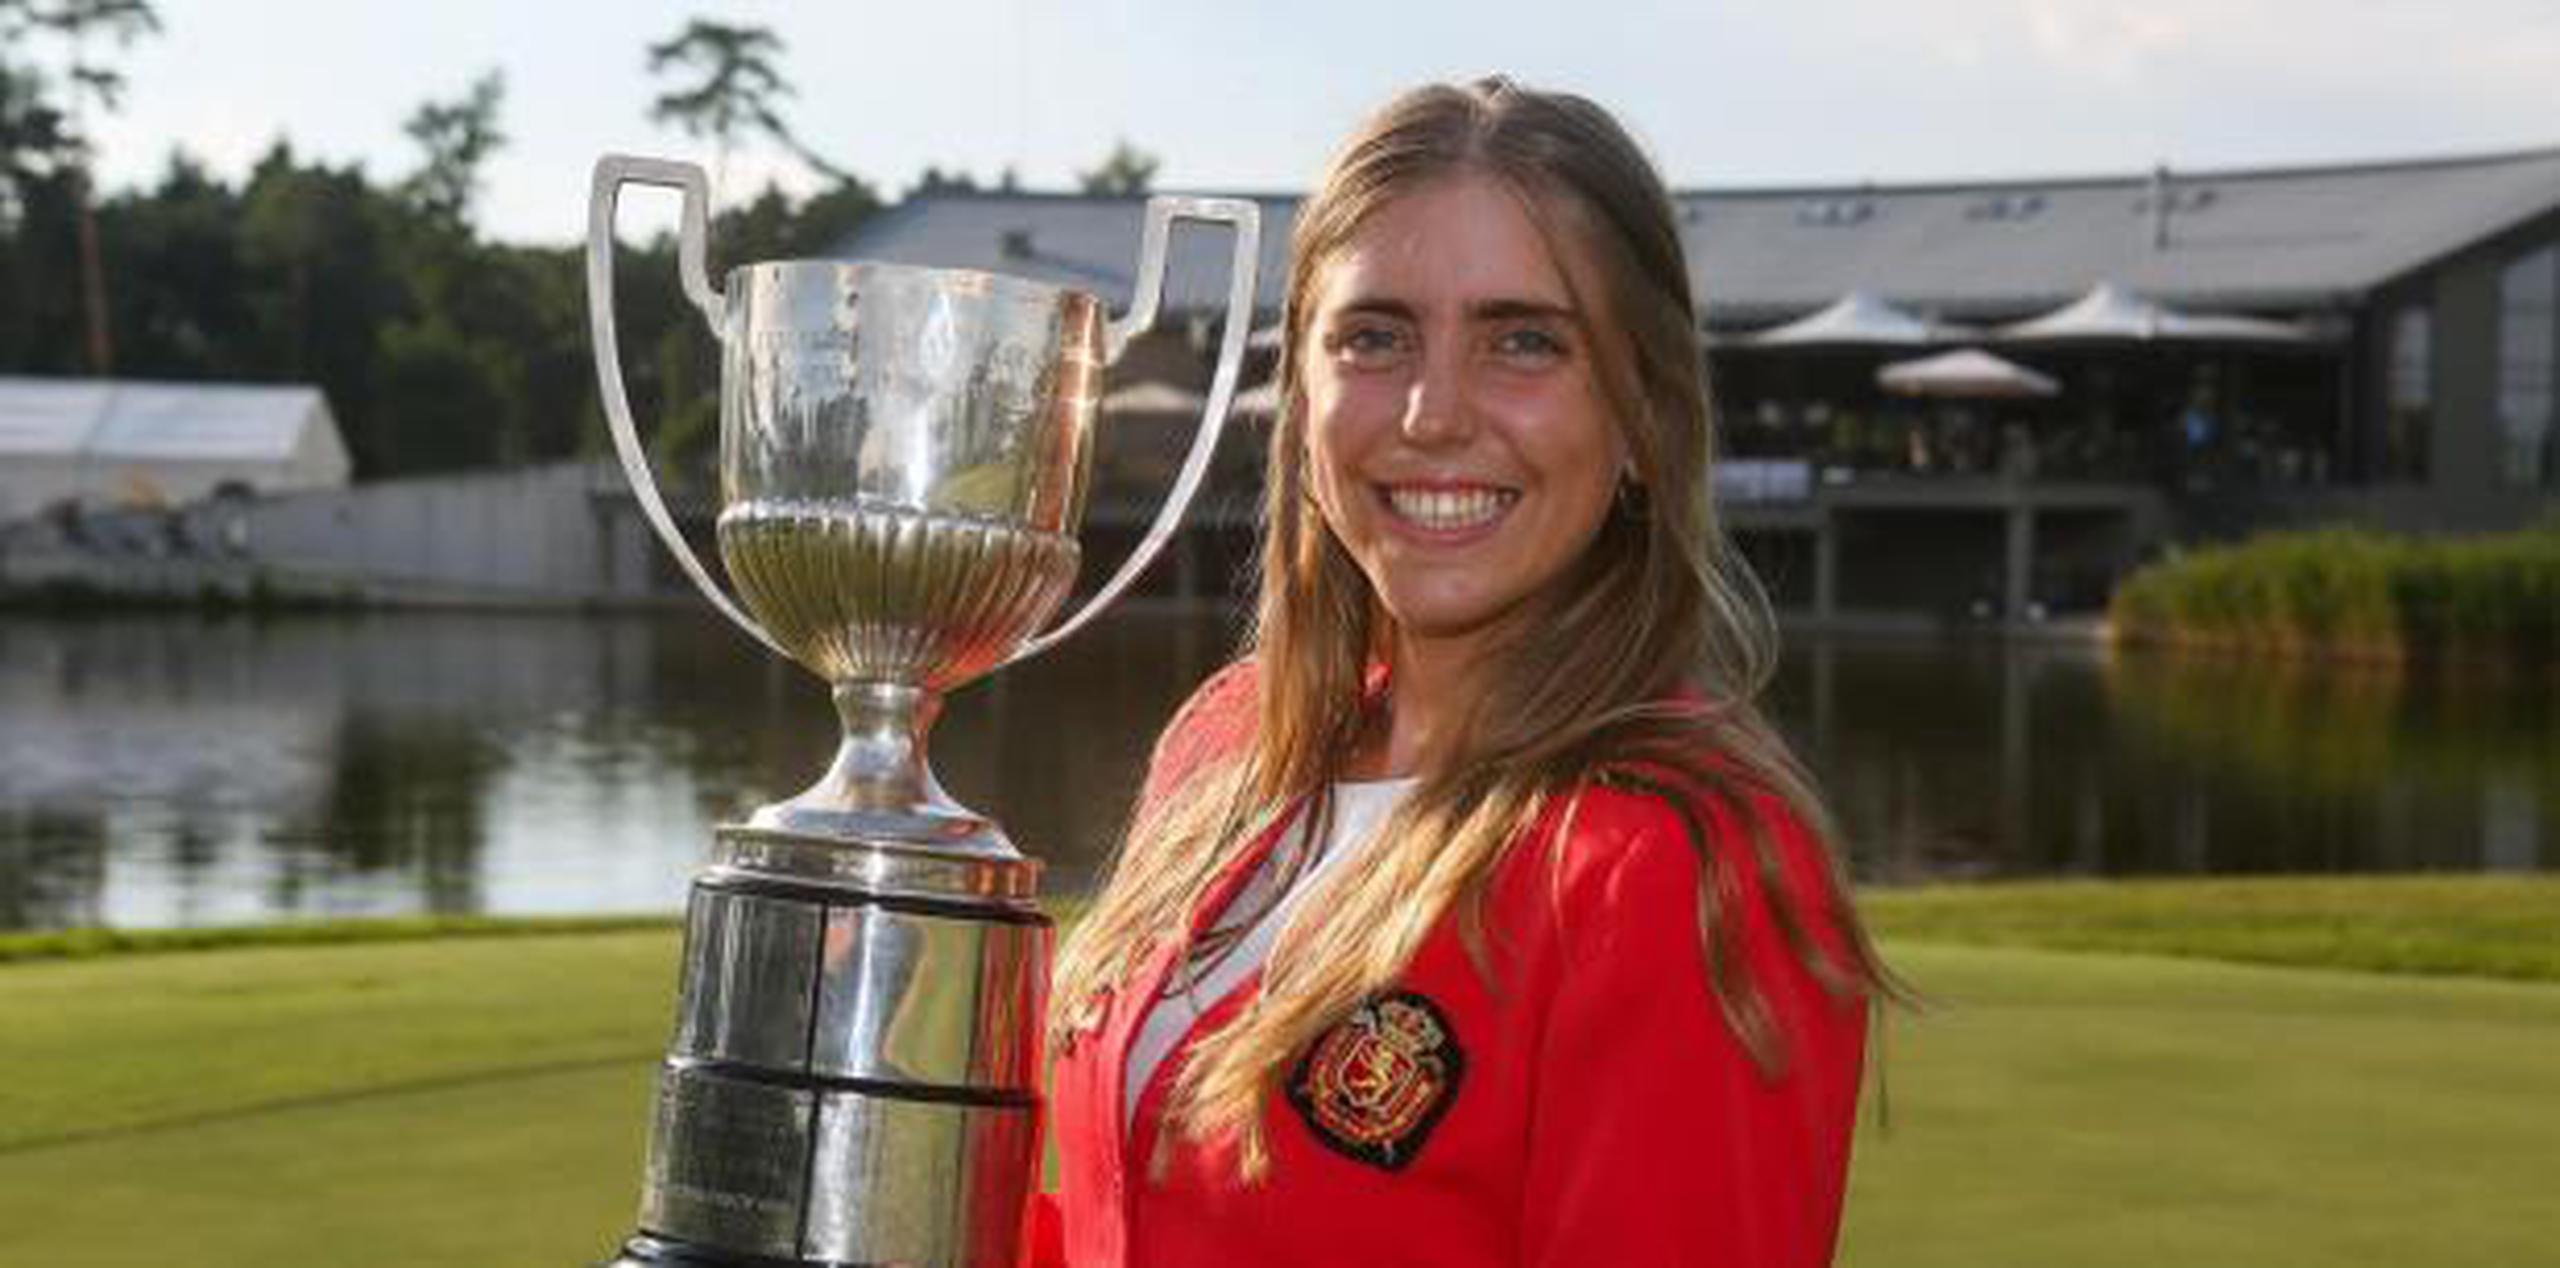 Celia Barquín con el trofeo del Campeonato de Europa Individual Femenino en el Penati Golf Club en Eslovaquia el 28 de julio de 2018. (EFE)